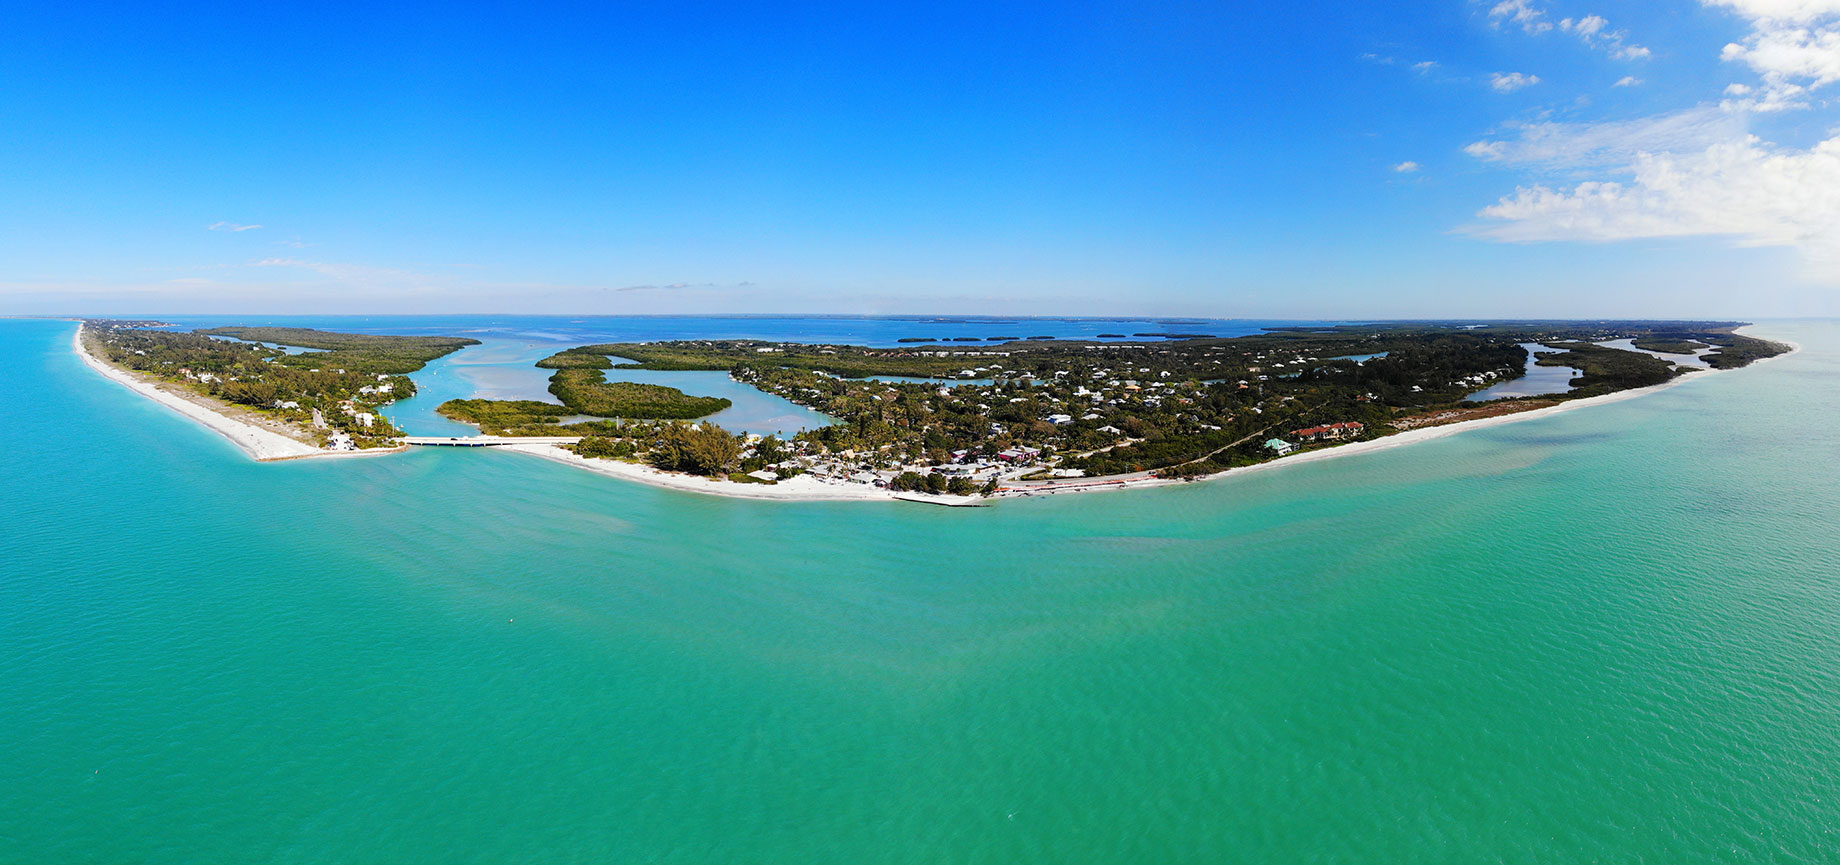 Sanibel Island, Florida - A Seashell Paradise